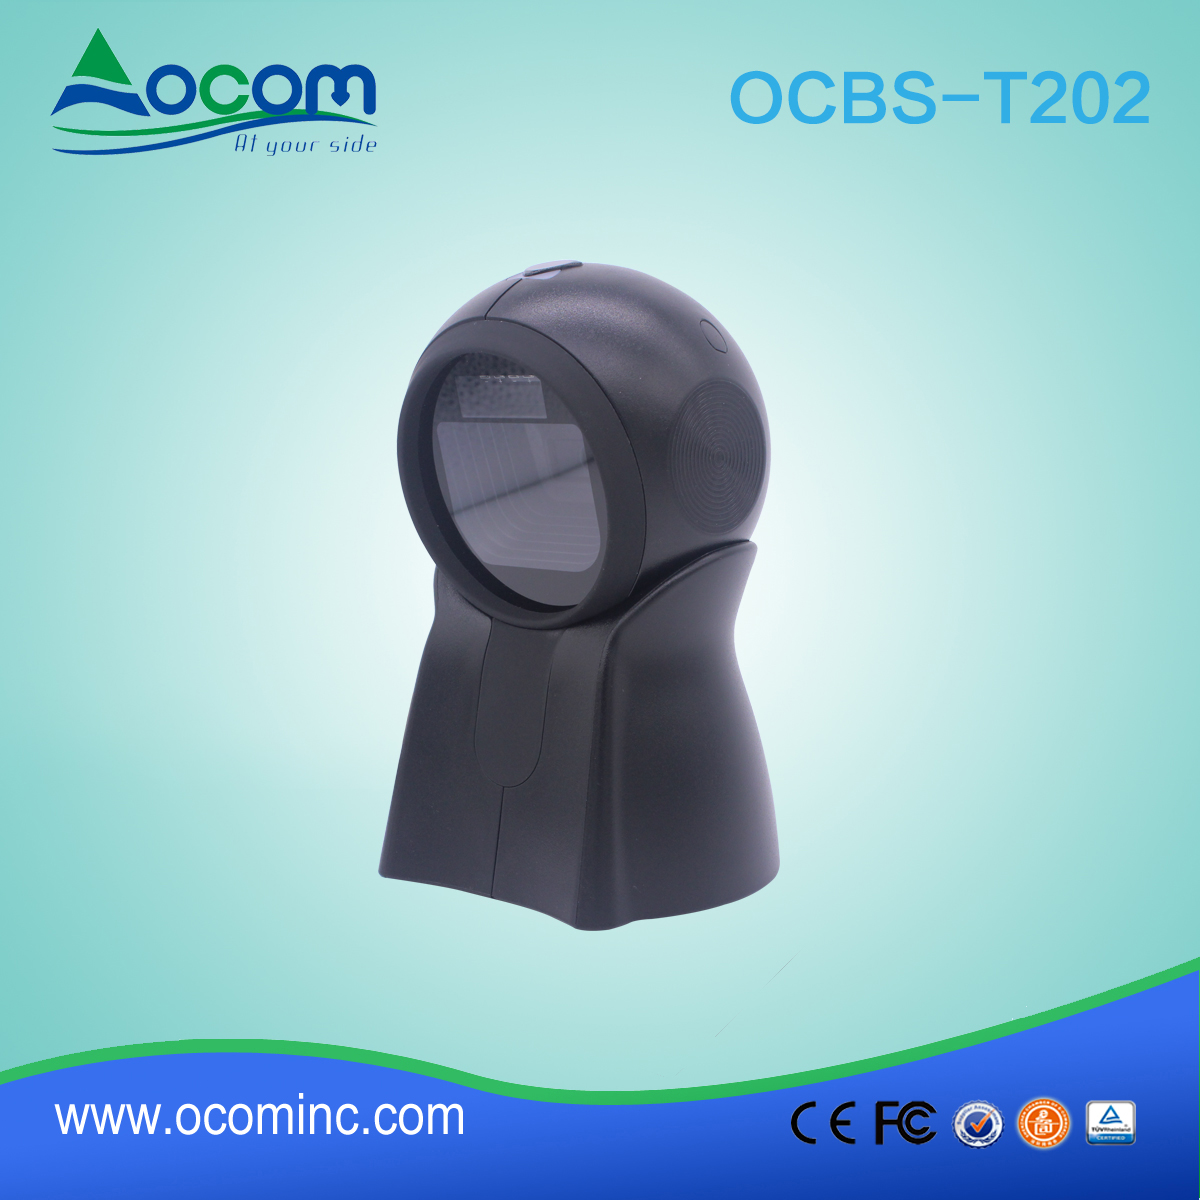 OCBS-T202: China goedkope supermarkt 2d barcode scanner machine